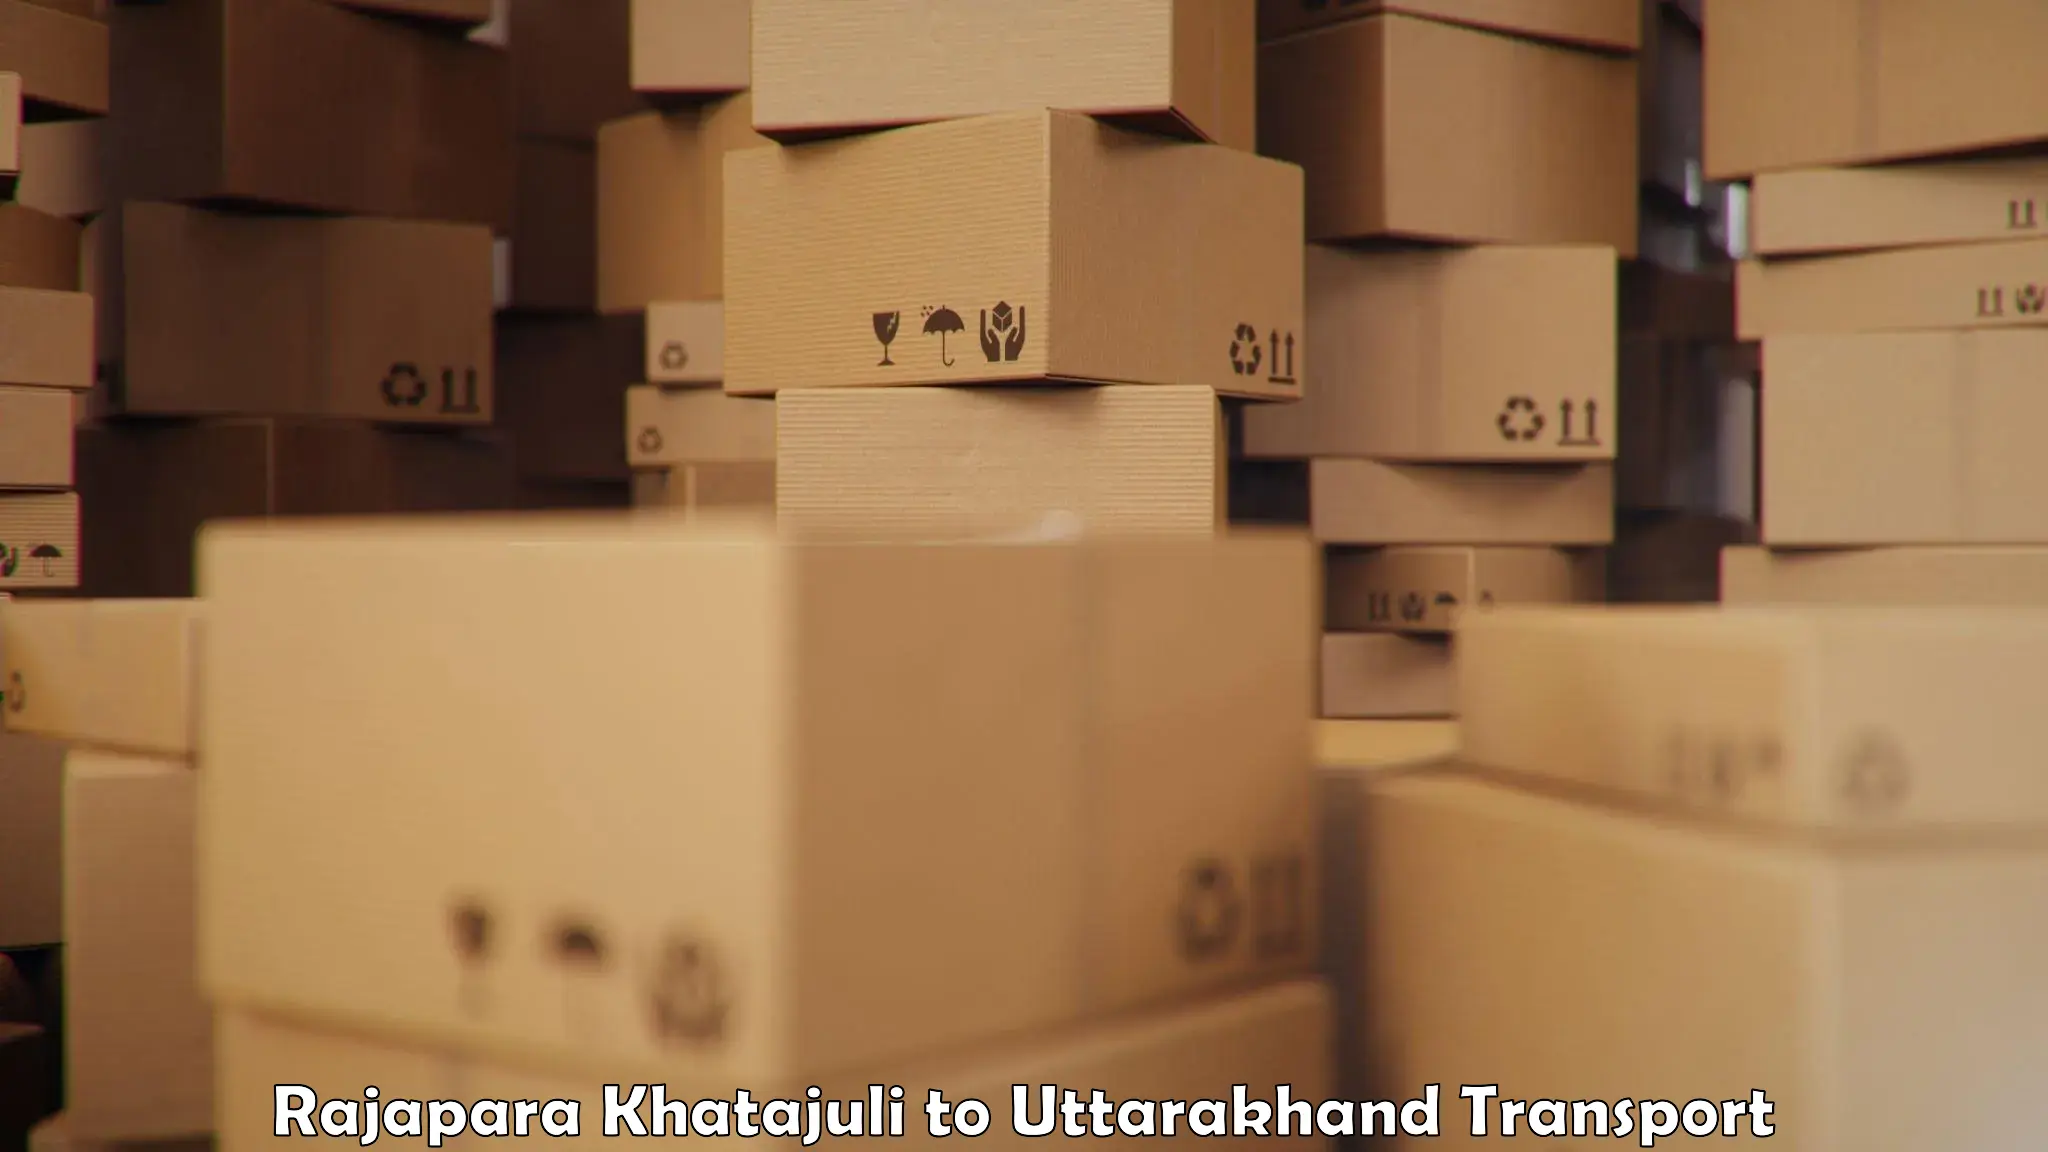 International cargo transportation services Rajapara Khatajuli to Bageshwar